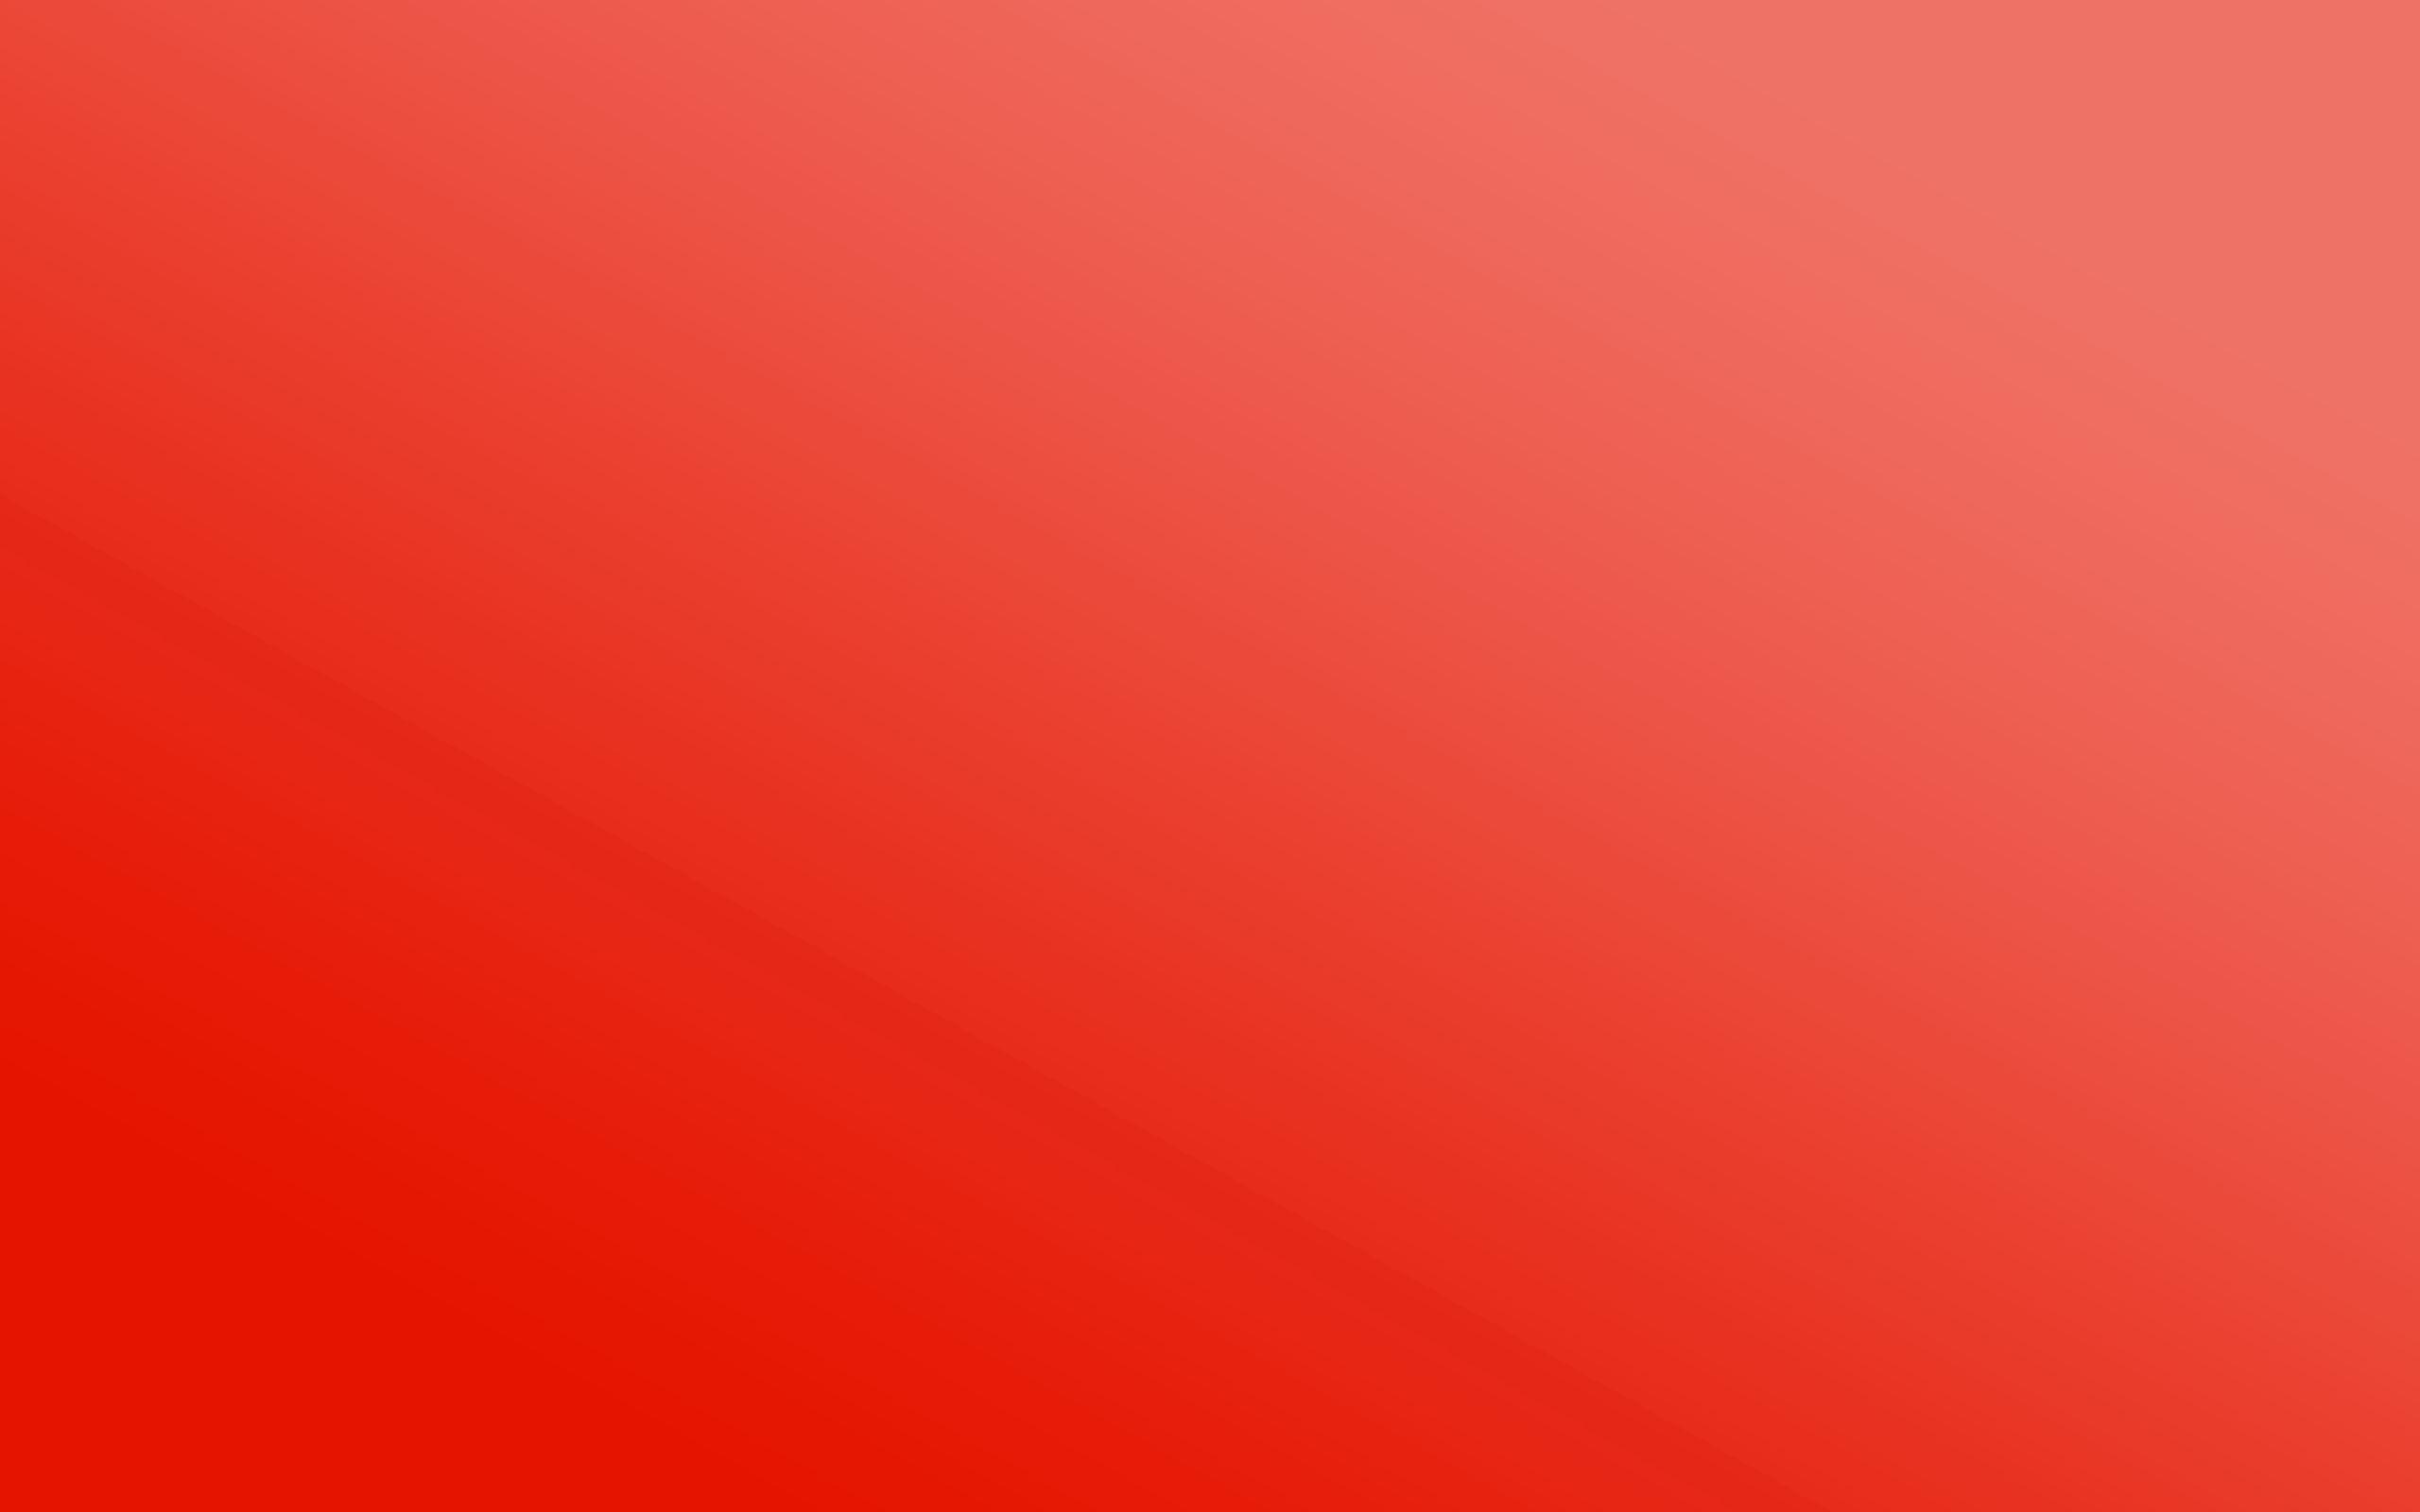 Solid Dark Red Wallpapers - Top Những Hình Ảnh Đẹp